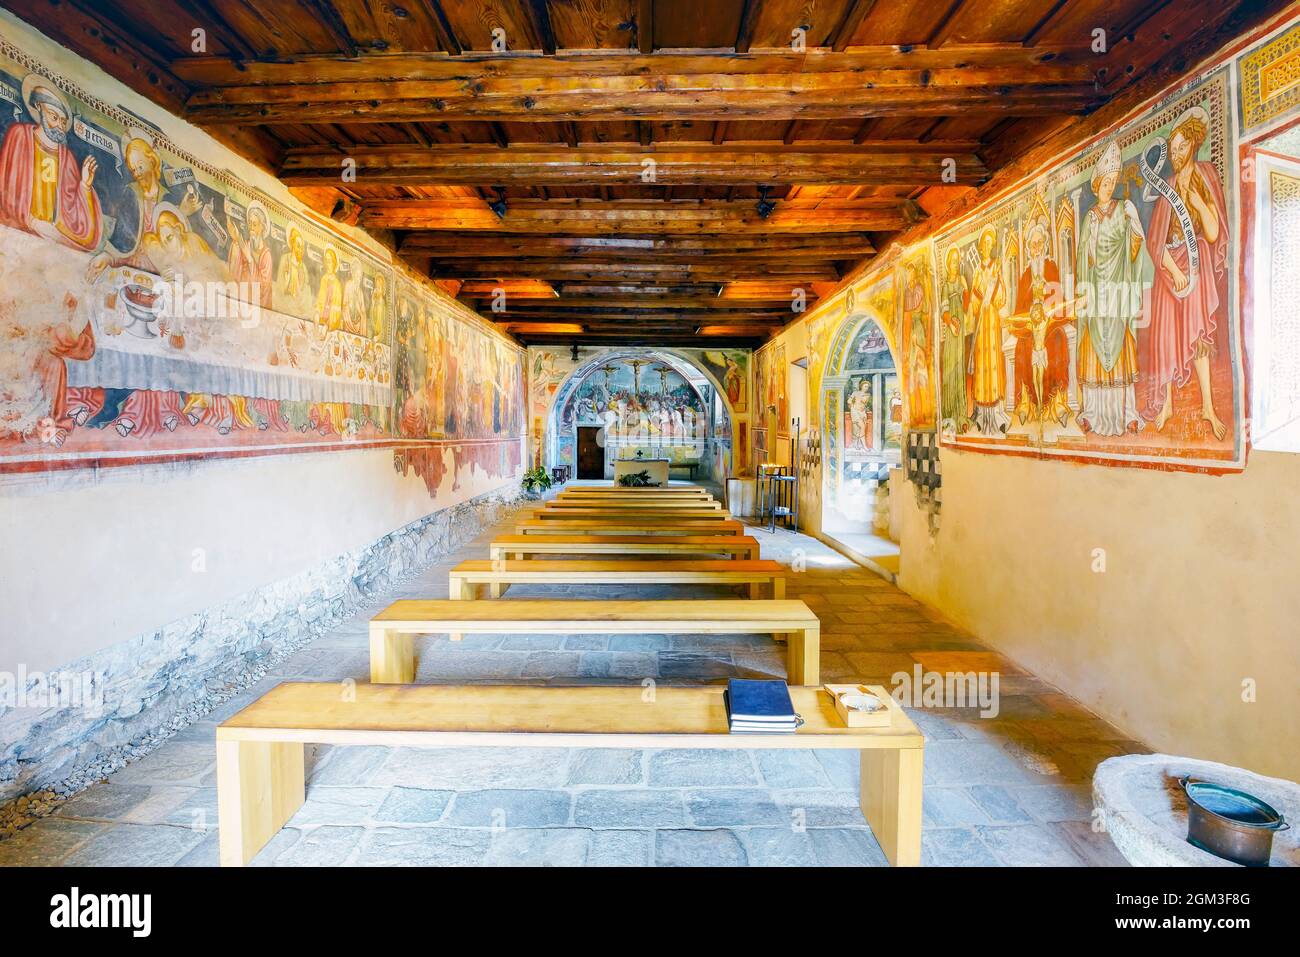 Das Innere der romanischen Kirche San Bernardo, die Wandmalereien stammen aus dem XV. Bis Anfang des XVII. Jahrhunderts. Monte Carasso, Schweiz. Stockfoto